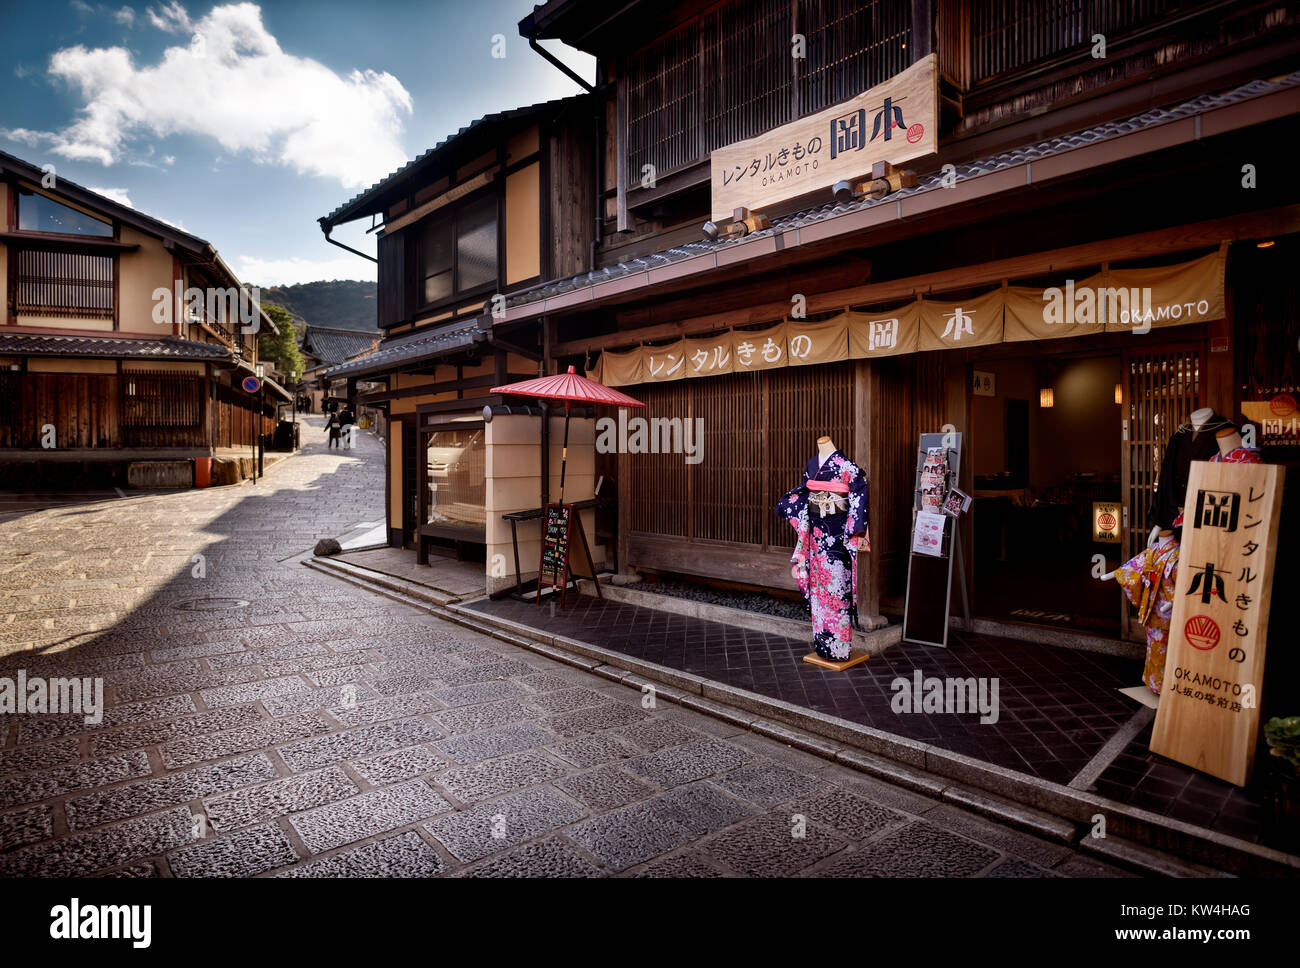 Okamoto rental kimono store near Kiyomizu-dera in Higashiyama, Kyoto, Japan 2017 Stock Photo